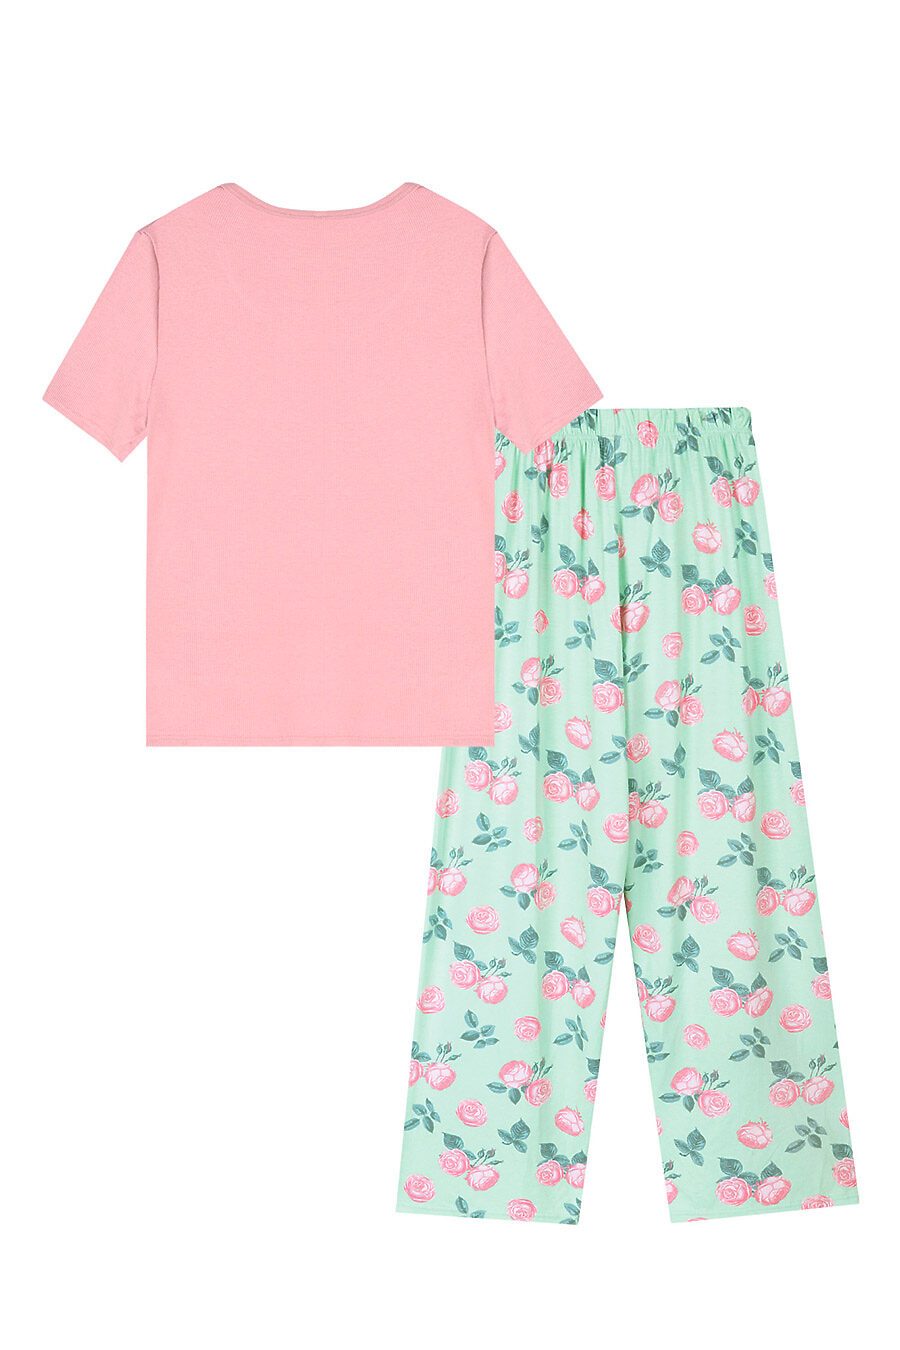 Пижама для женщин BOSSA NOVA 708539 купить оптом от производителя. Совместная покупка женской одежды в OptMoyo